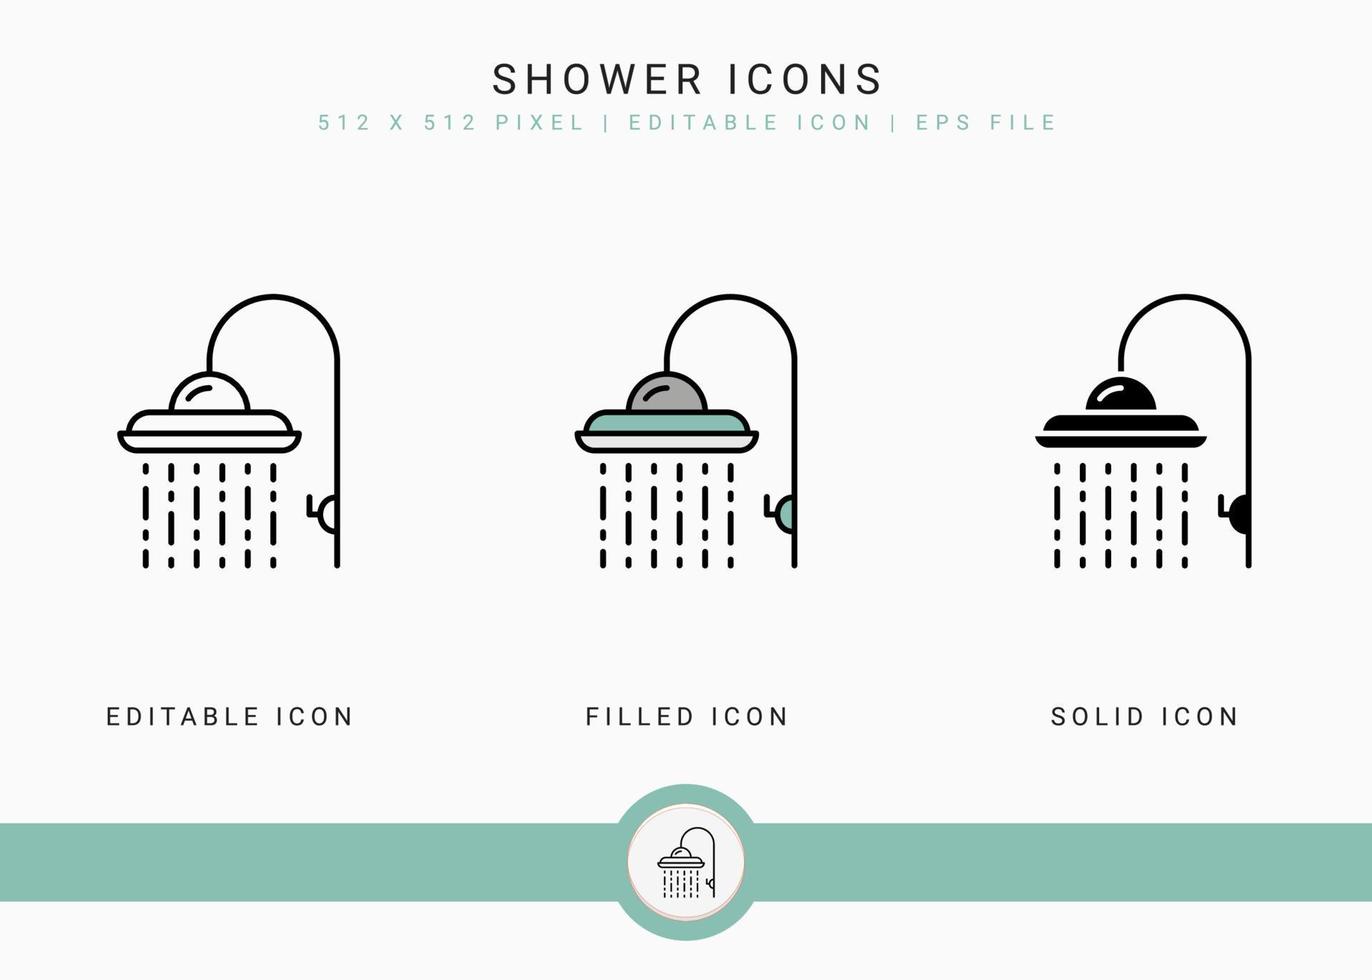 icônes de douche définies illustration vectorielle avec style de ligne d'icône. concept de salle de bain avec arroseur de douche. icône de trait modifiable sur fond blanc isolé pour la conception Web, l'interface utilisateur et l'application mobile vecteur